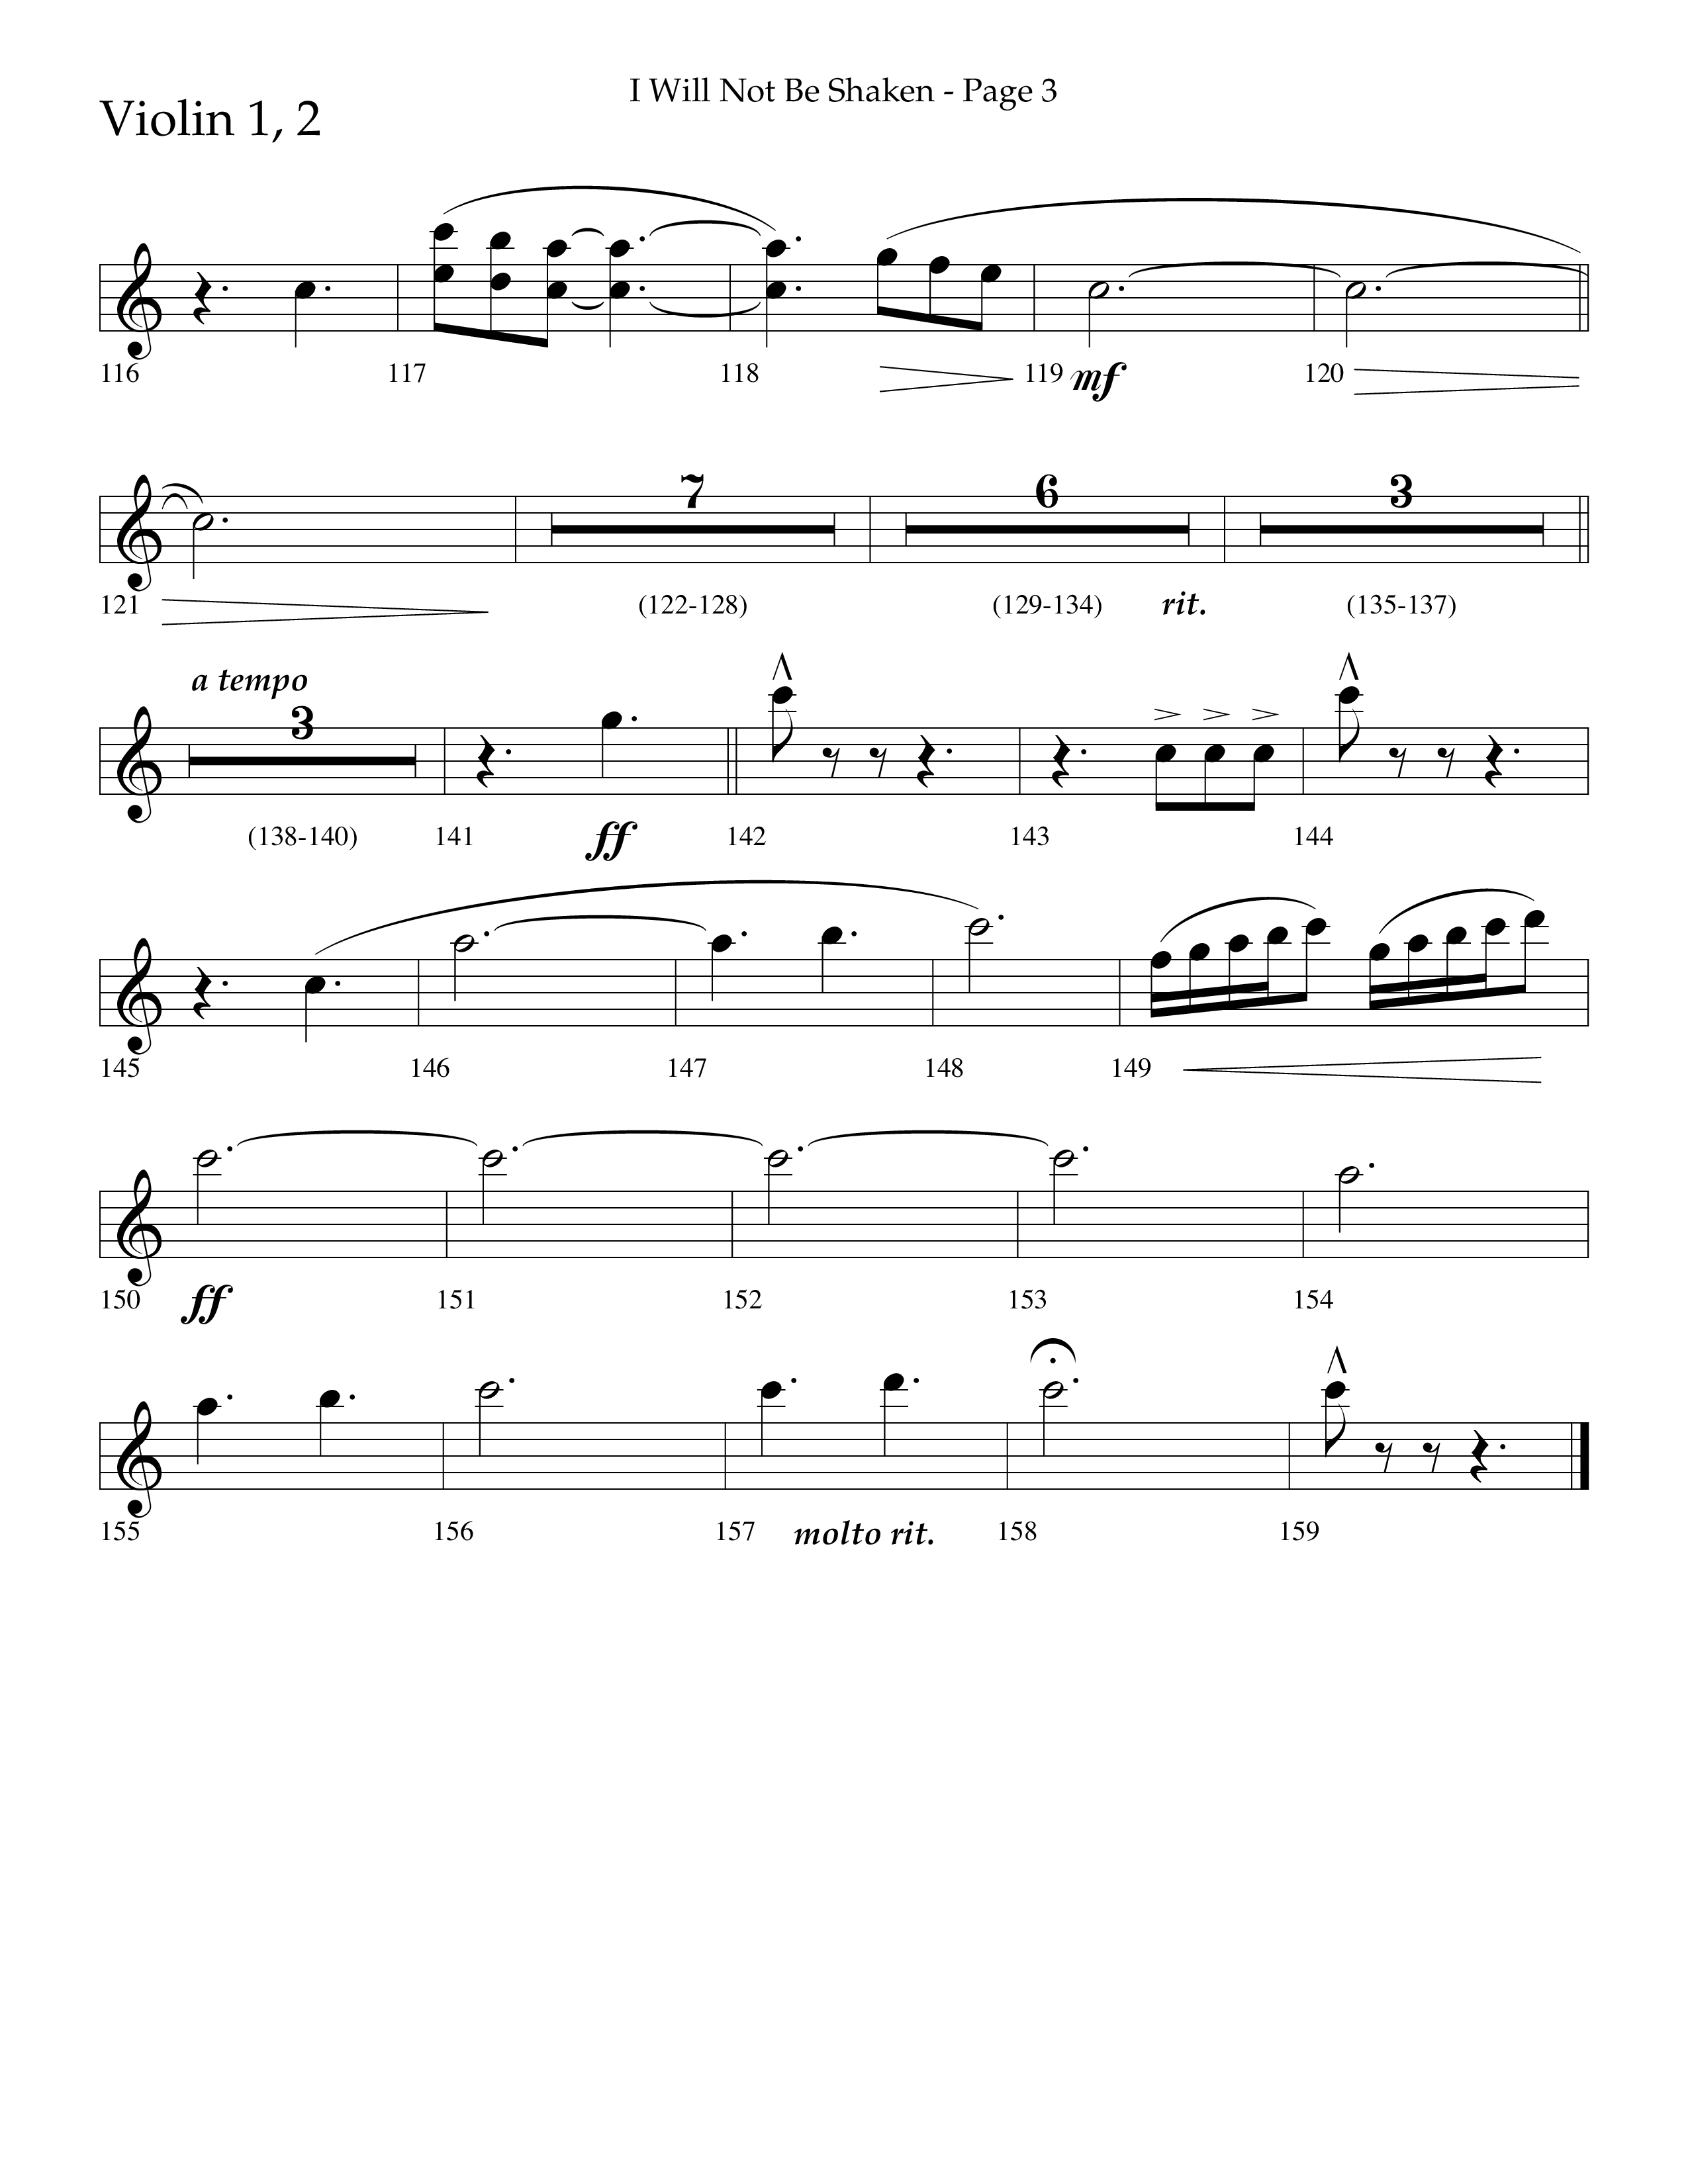 I Will Not Be Shaken (Choral Anthem SATB) Violin 1/2 (Lifeway Choral / Arr. Cliff Duren)